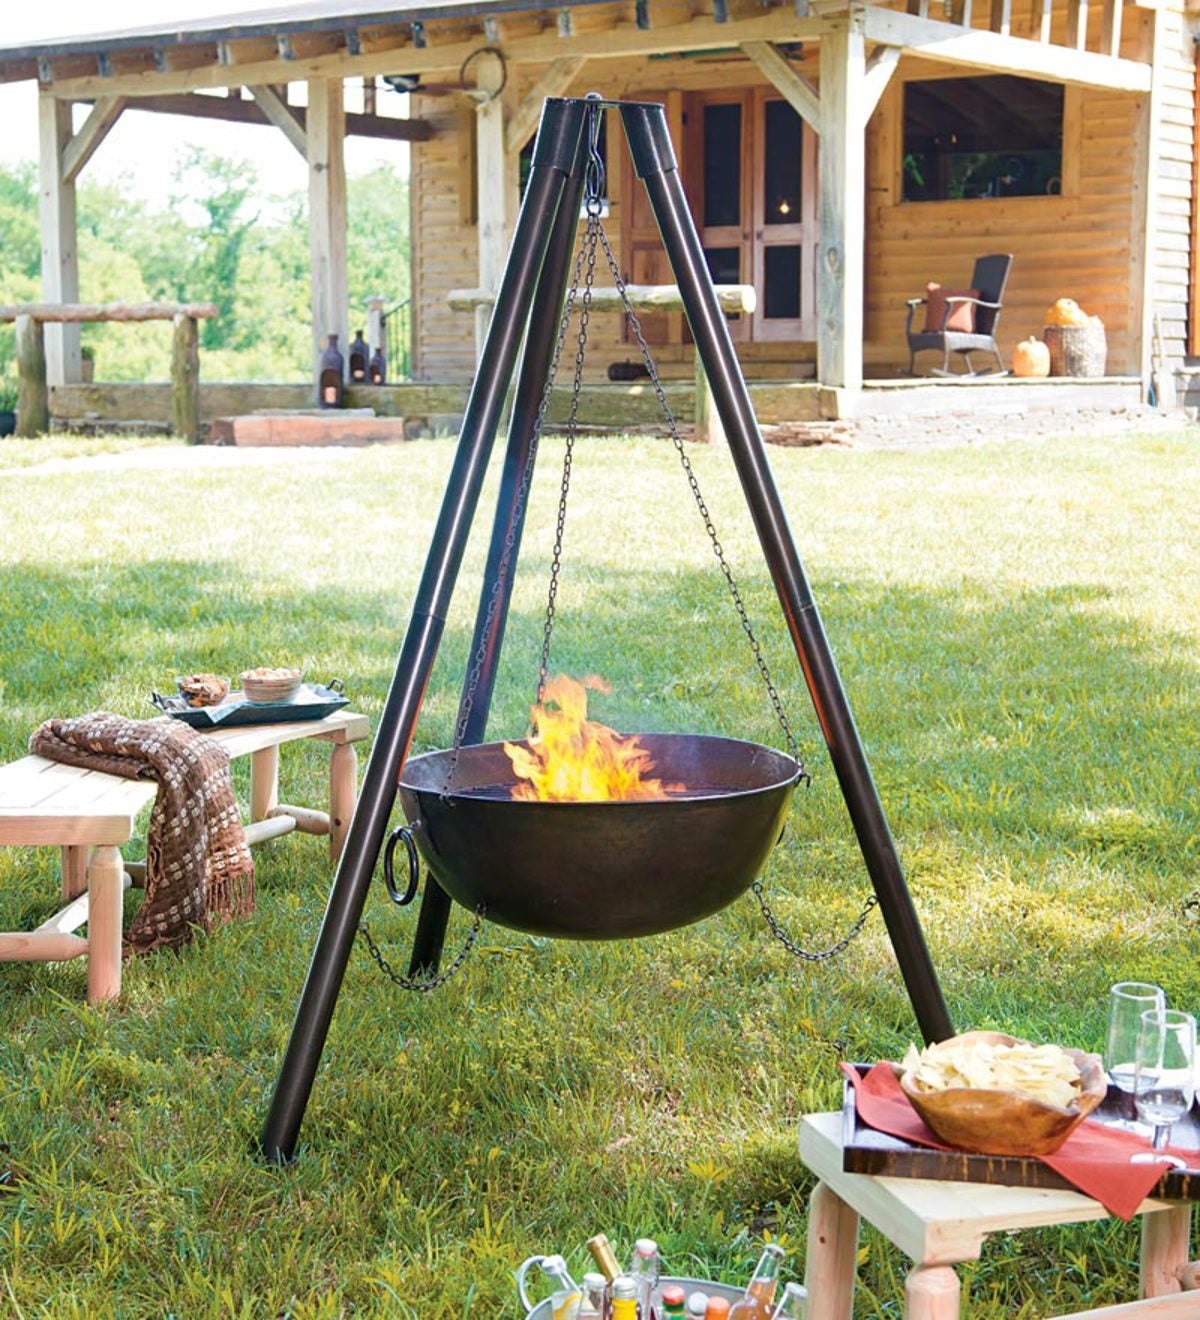 【ブランド】 Tripod Grilling Set Fire Pit Cooking Grill Grate Outdoor Bbq Camping Cookware Accessory